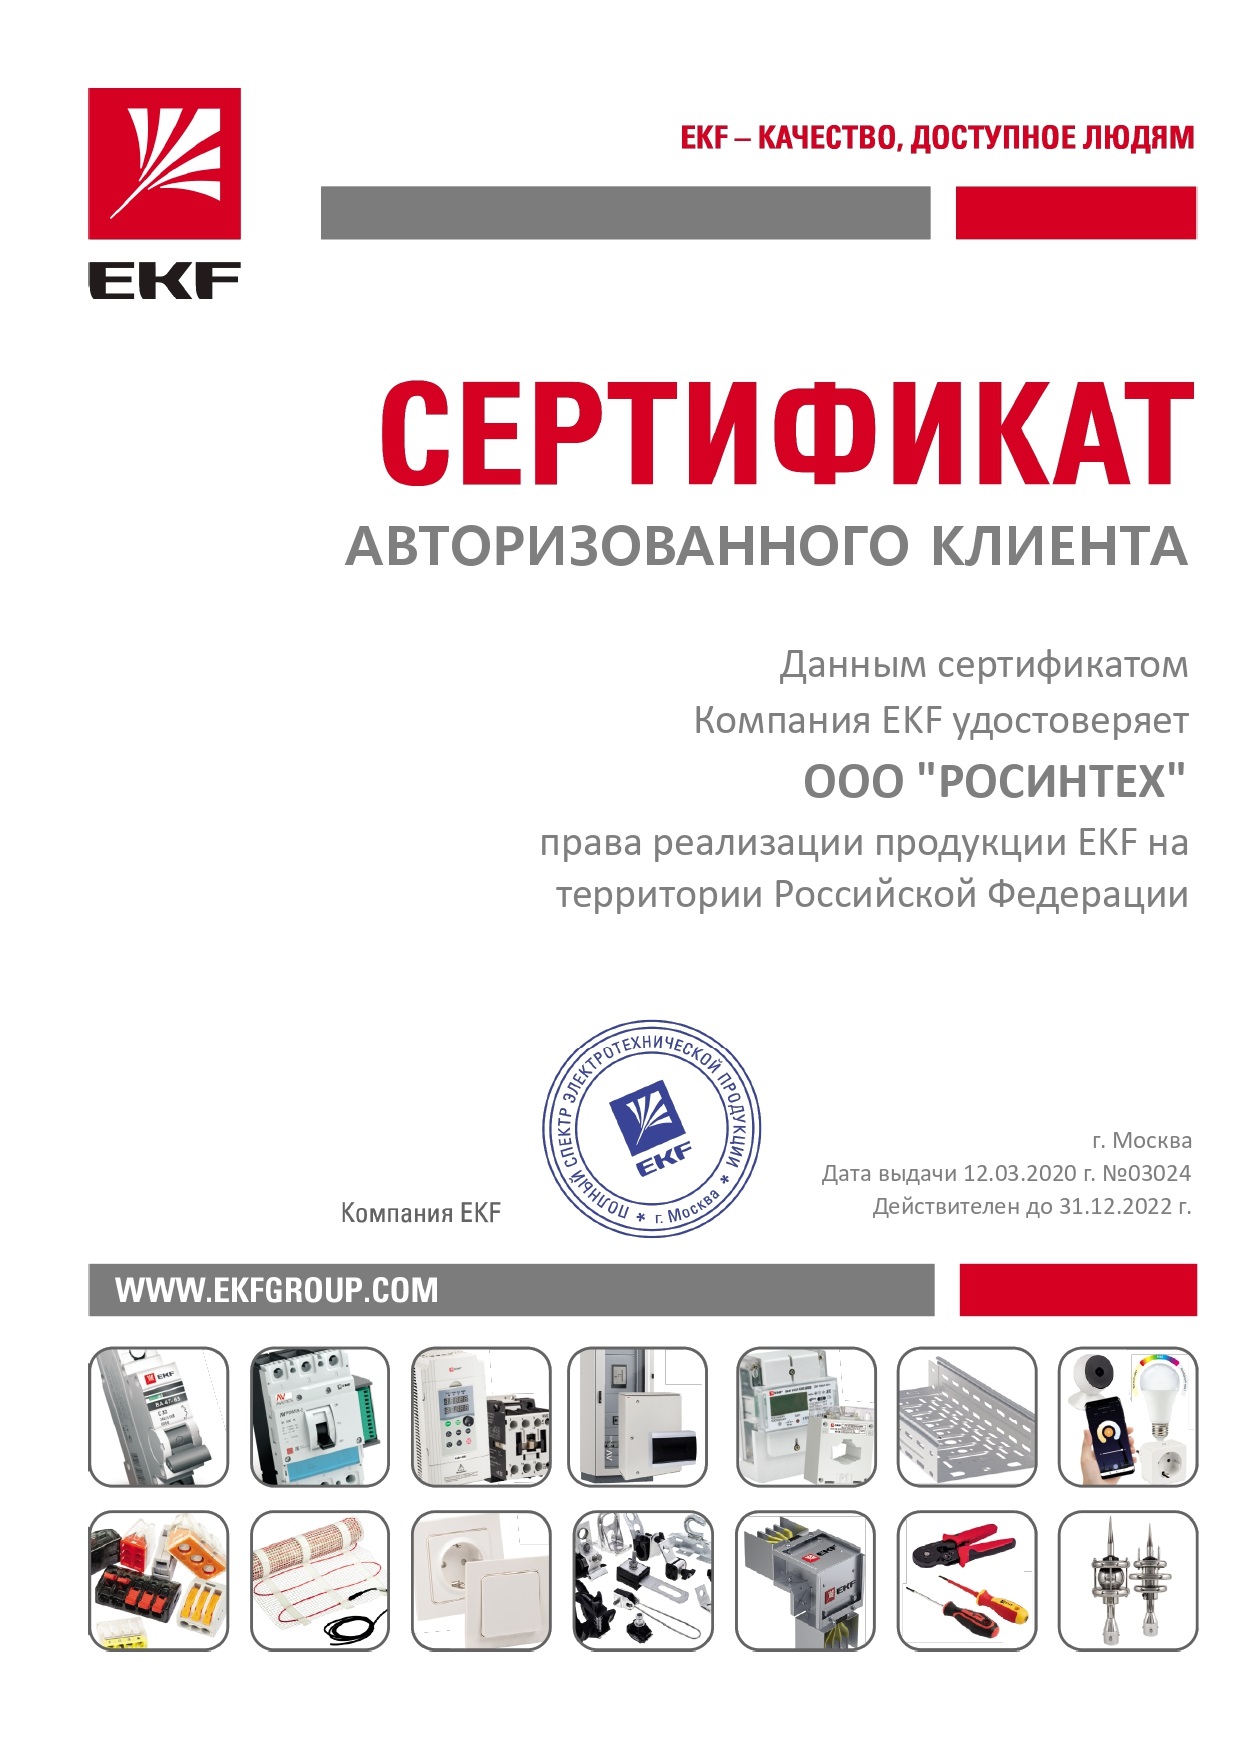 Сертификат авторизованного клиента EKF